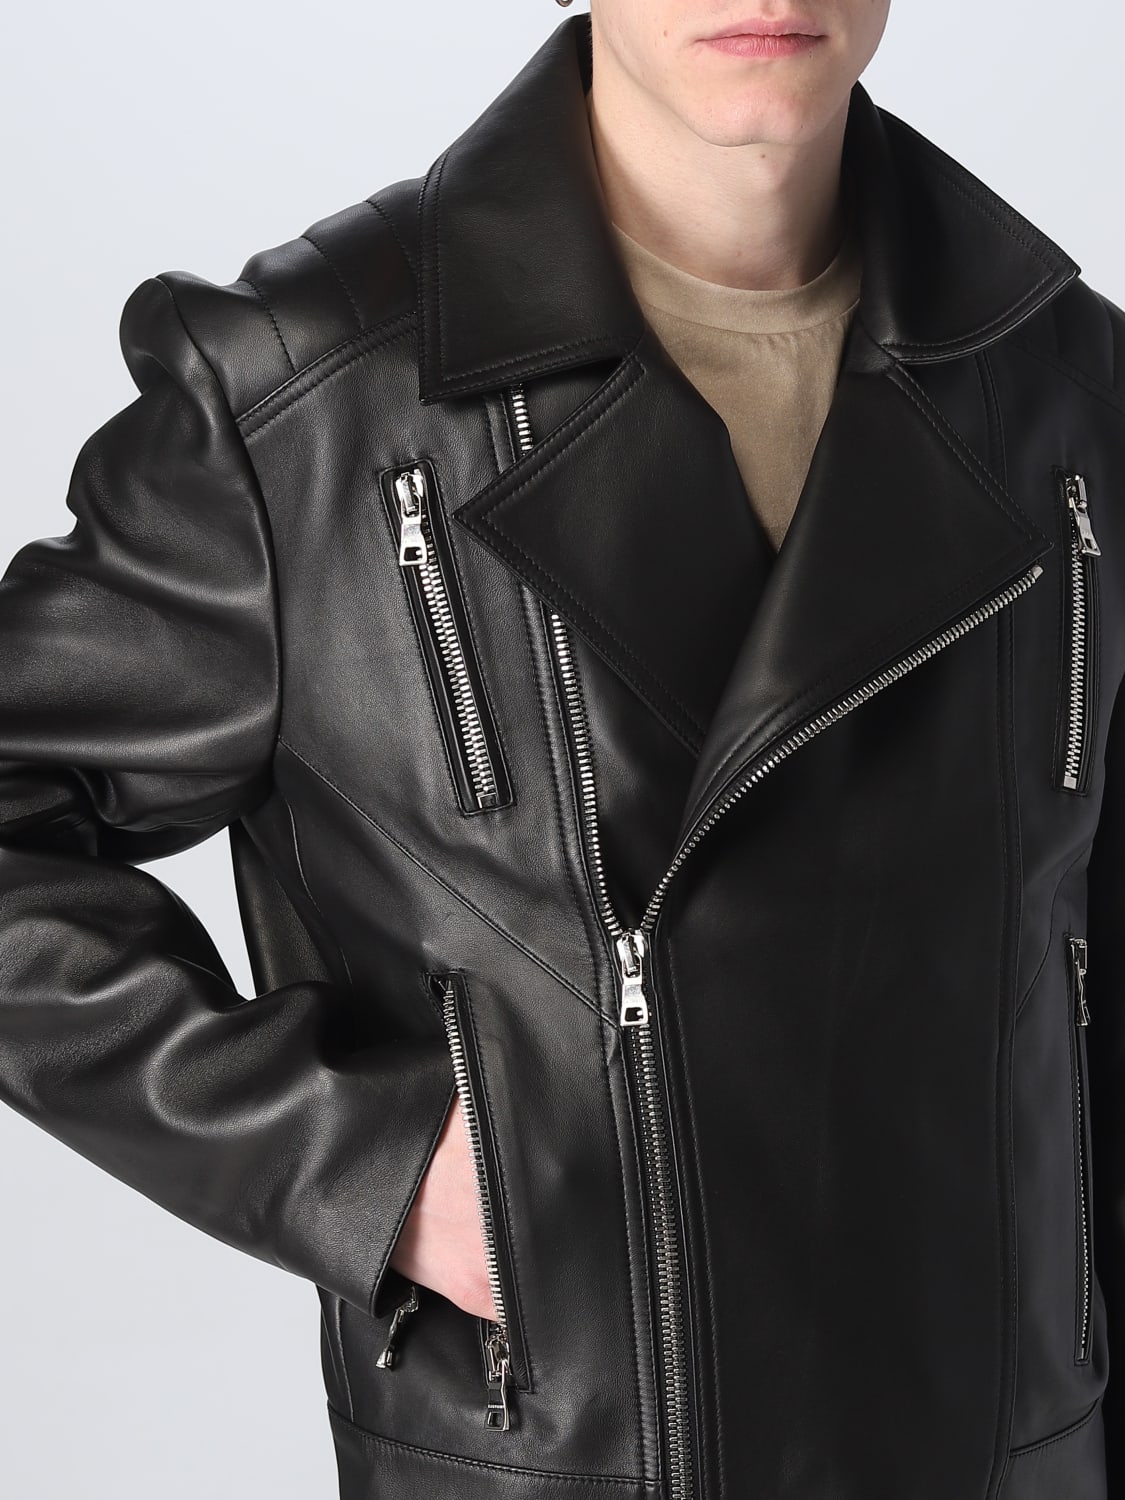 Initiativ Fremtrædende Erhverv BALMAIN: leather jacket - Black | Balmain jacket AH1TD170LB24 online on  GIGLIO.COM